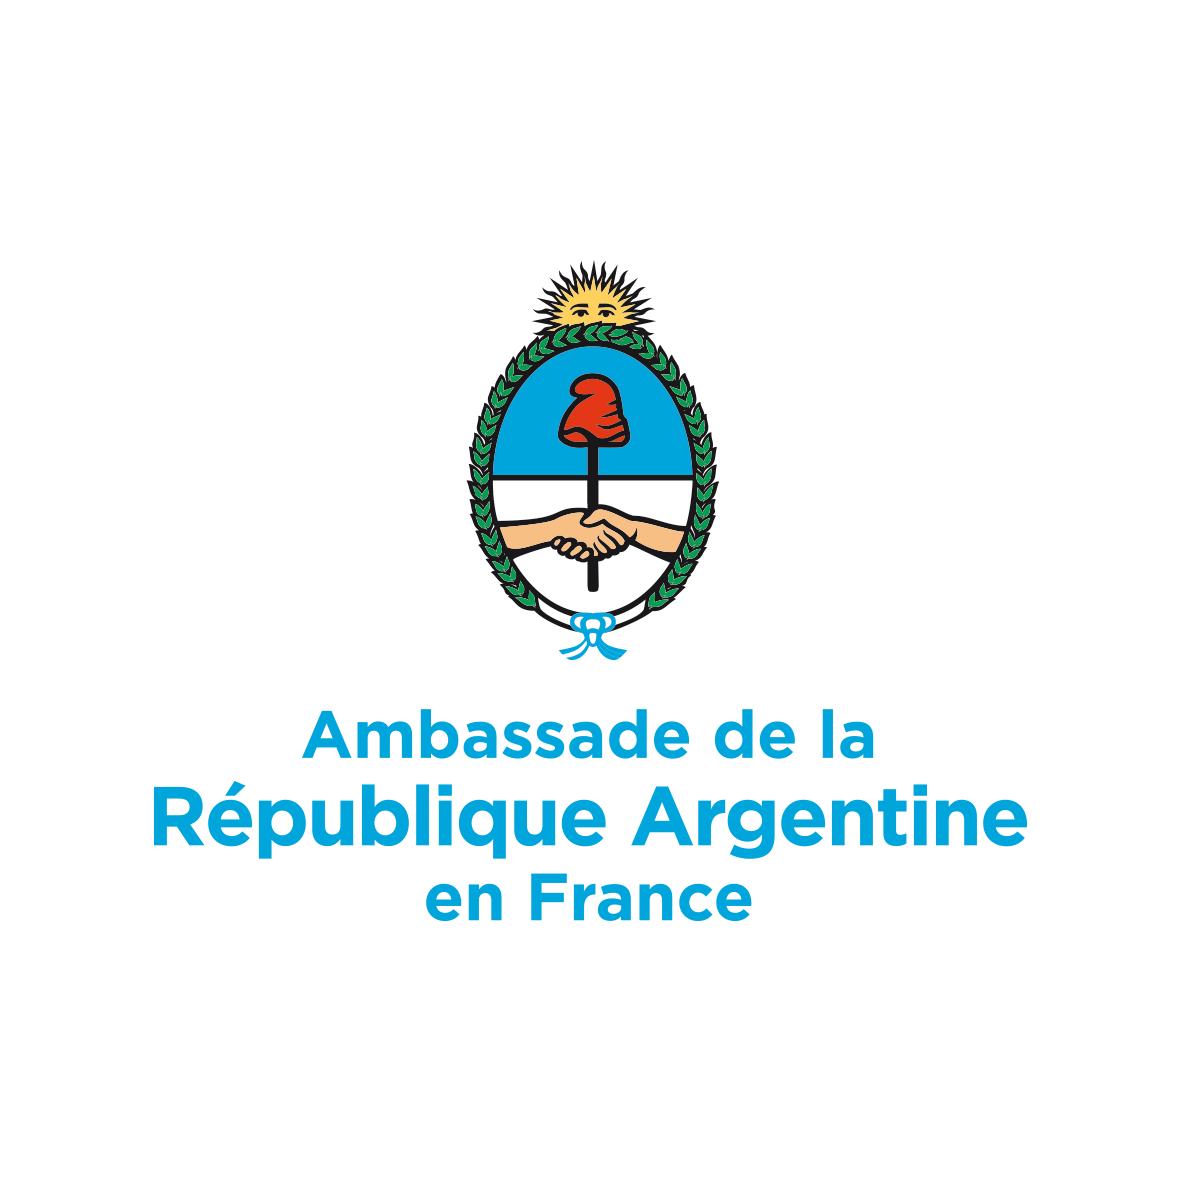 Ambassade de la République d'Argentine en France